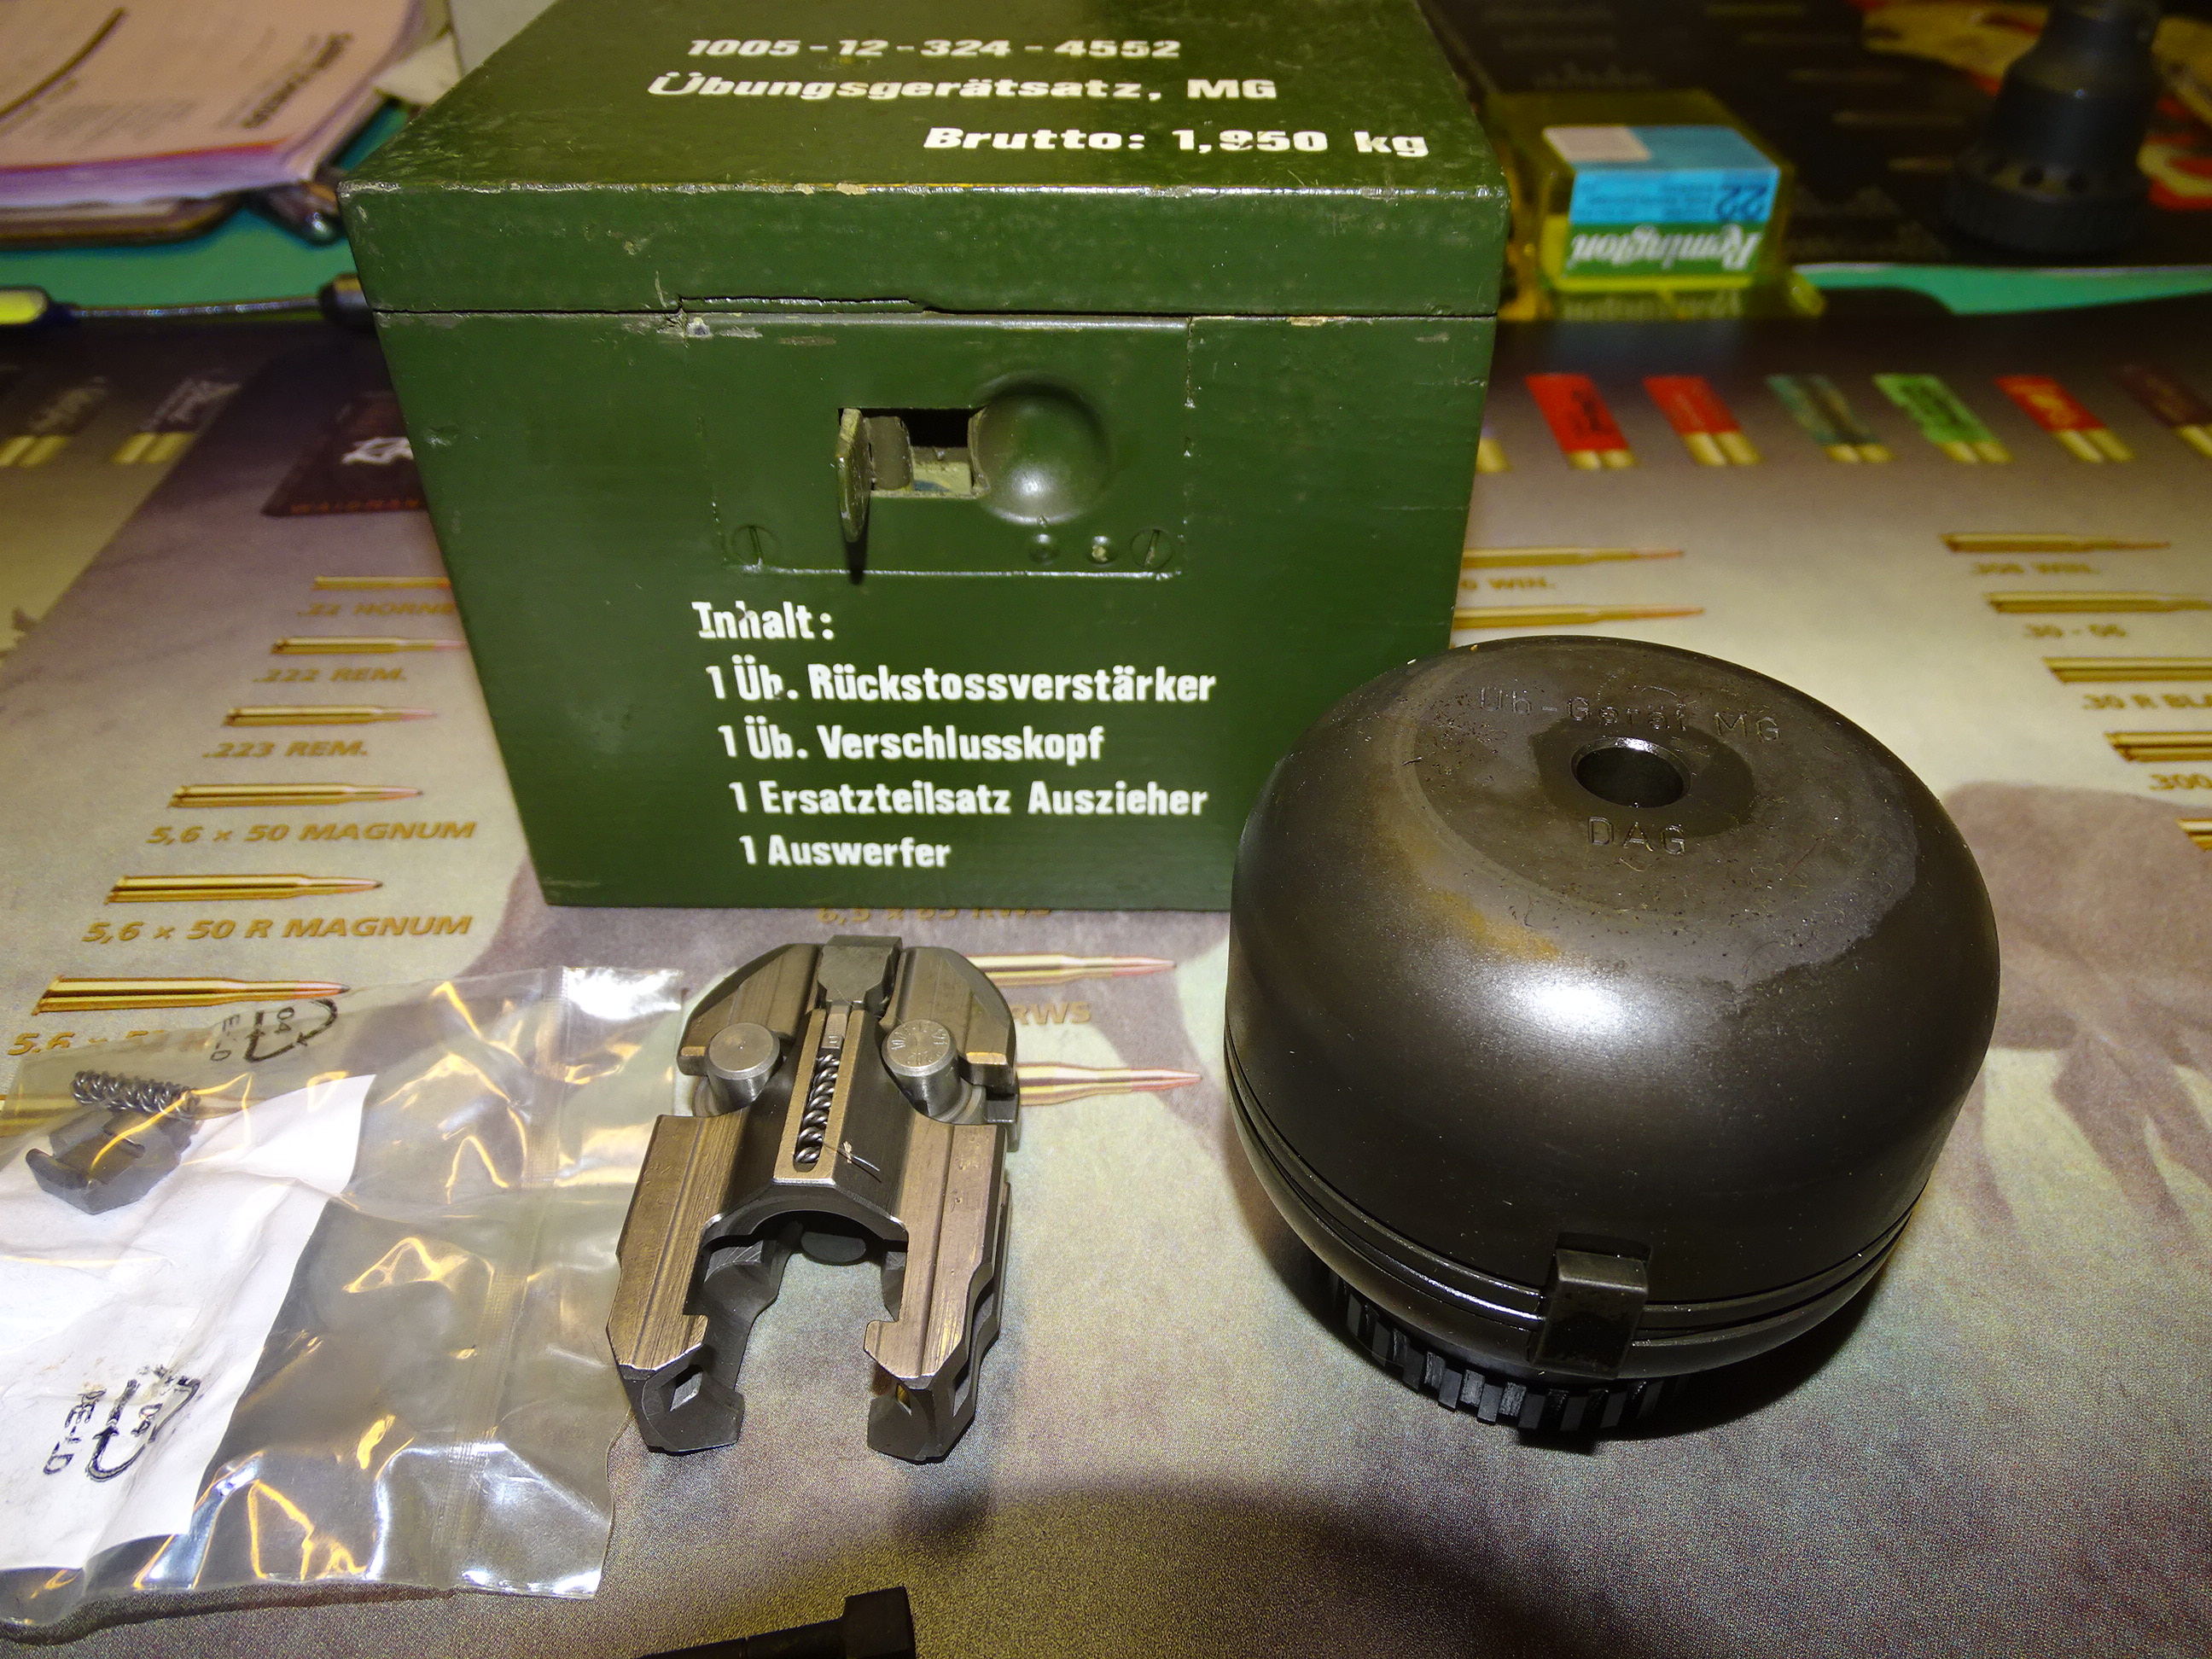 MG3 BFA and Training Adapter